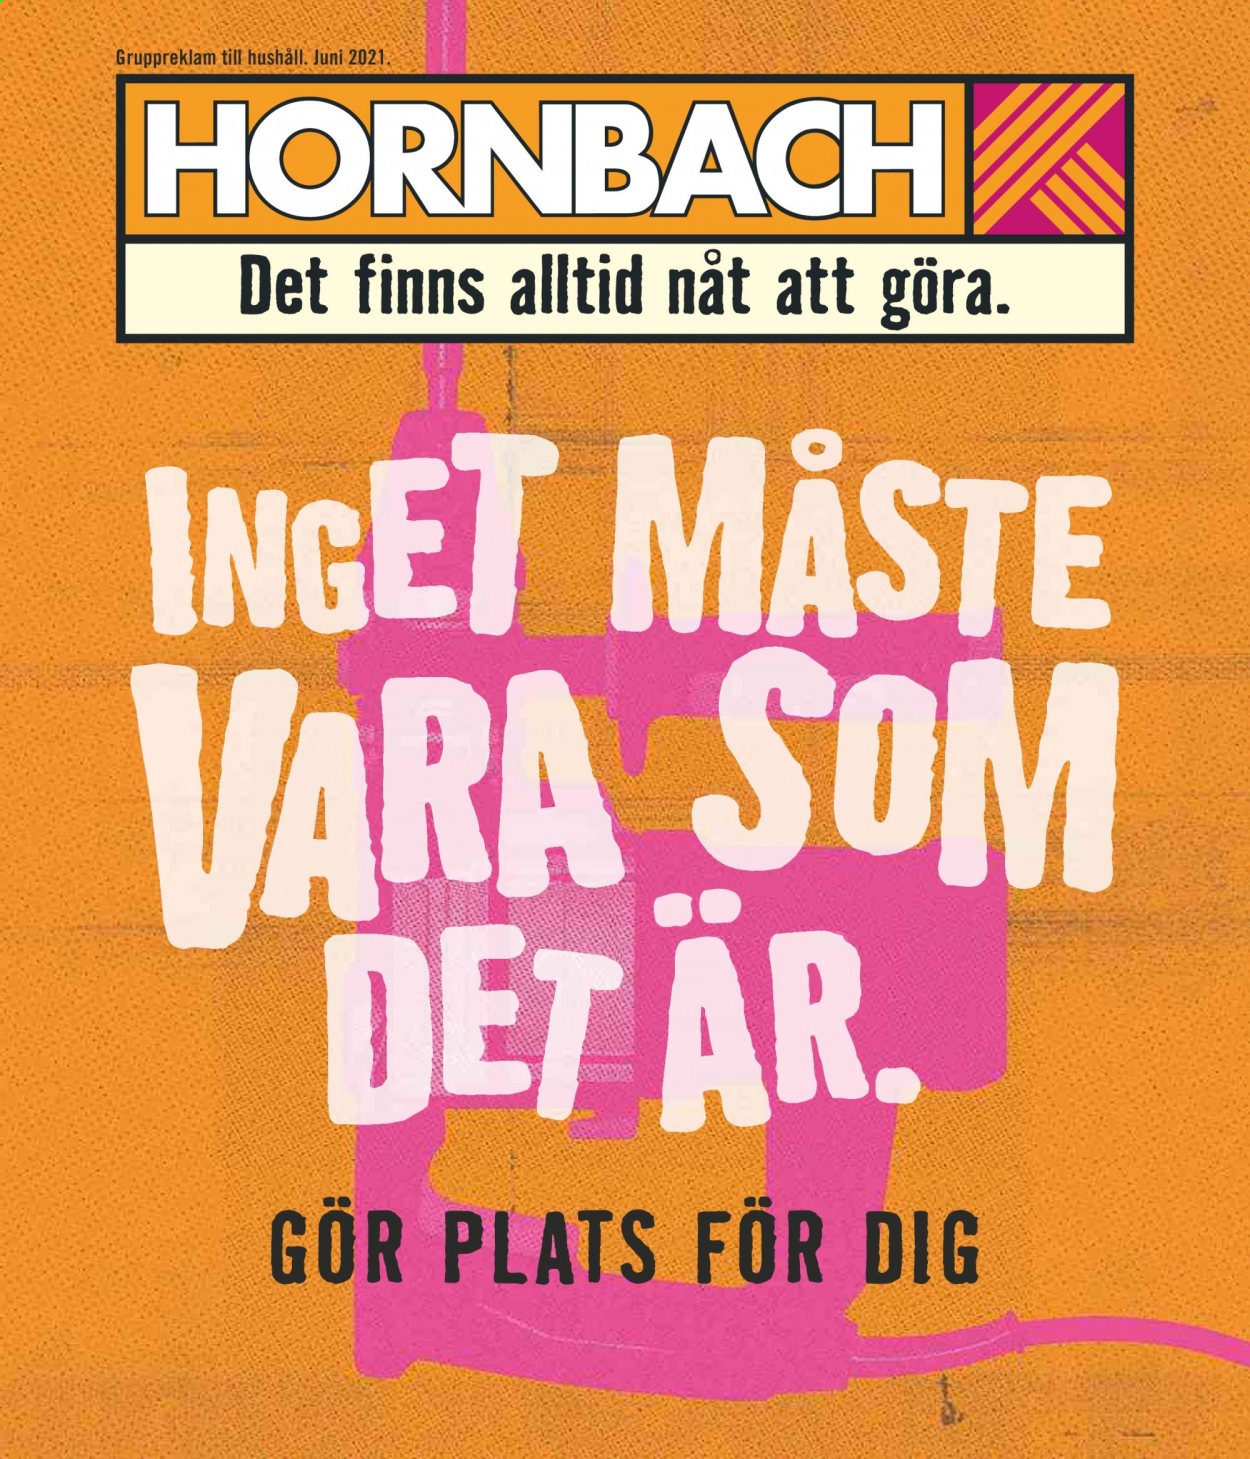 Hornbach reklamblad - 1/6 2021 - 30/6 2021.